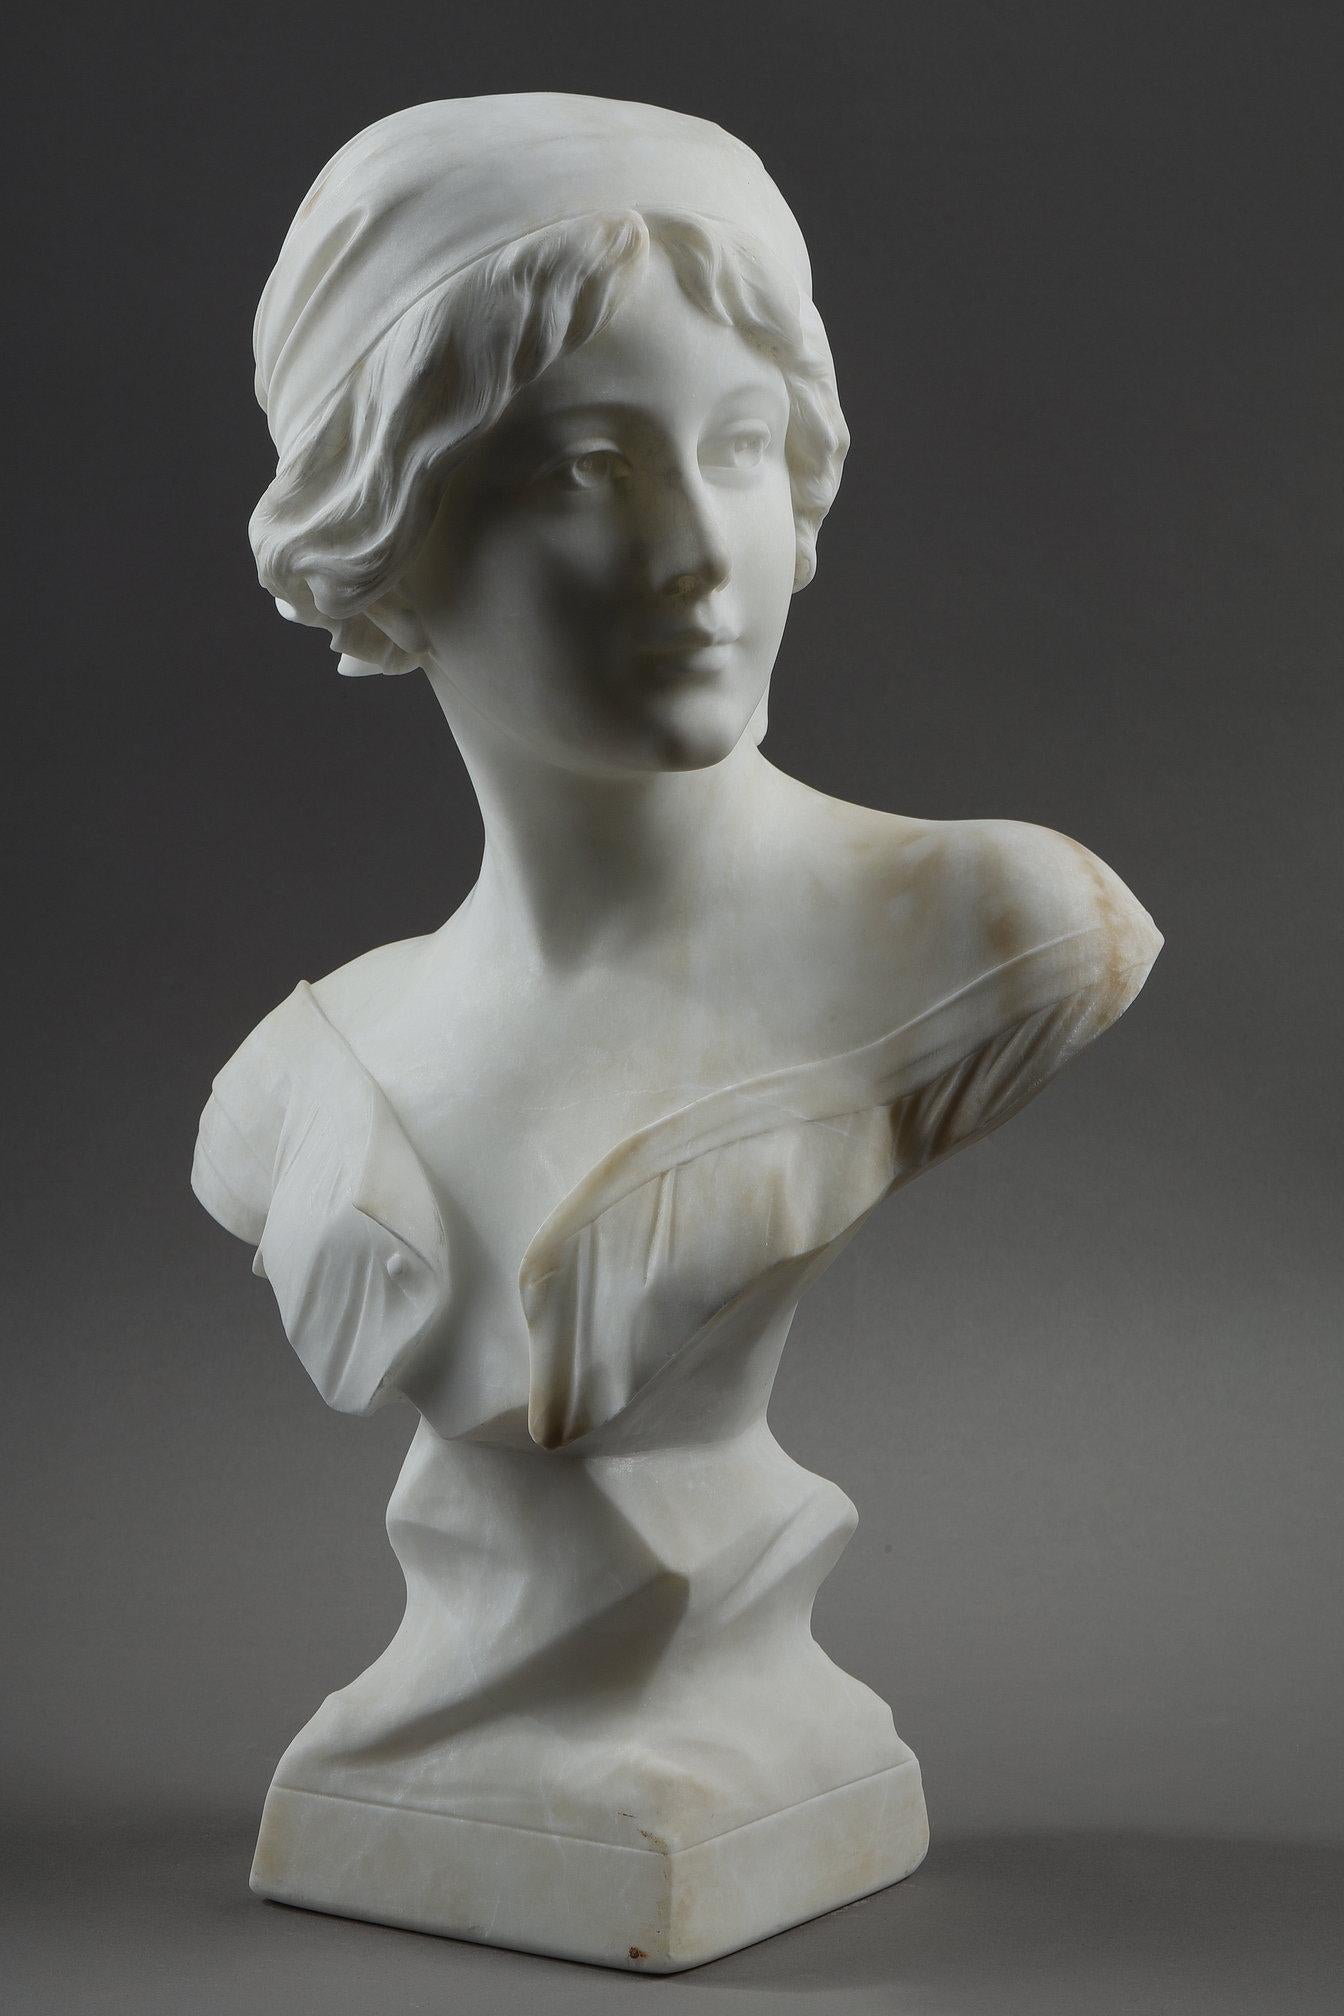 Sculpture en albâtre représentant un buste de jeune femme, les cheveux retenus par un fichu. Signé au dos : A. Cyprien.

